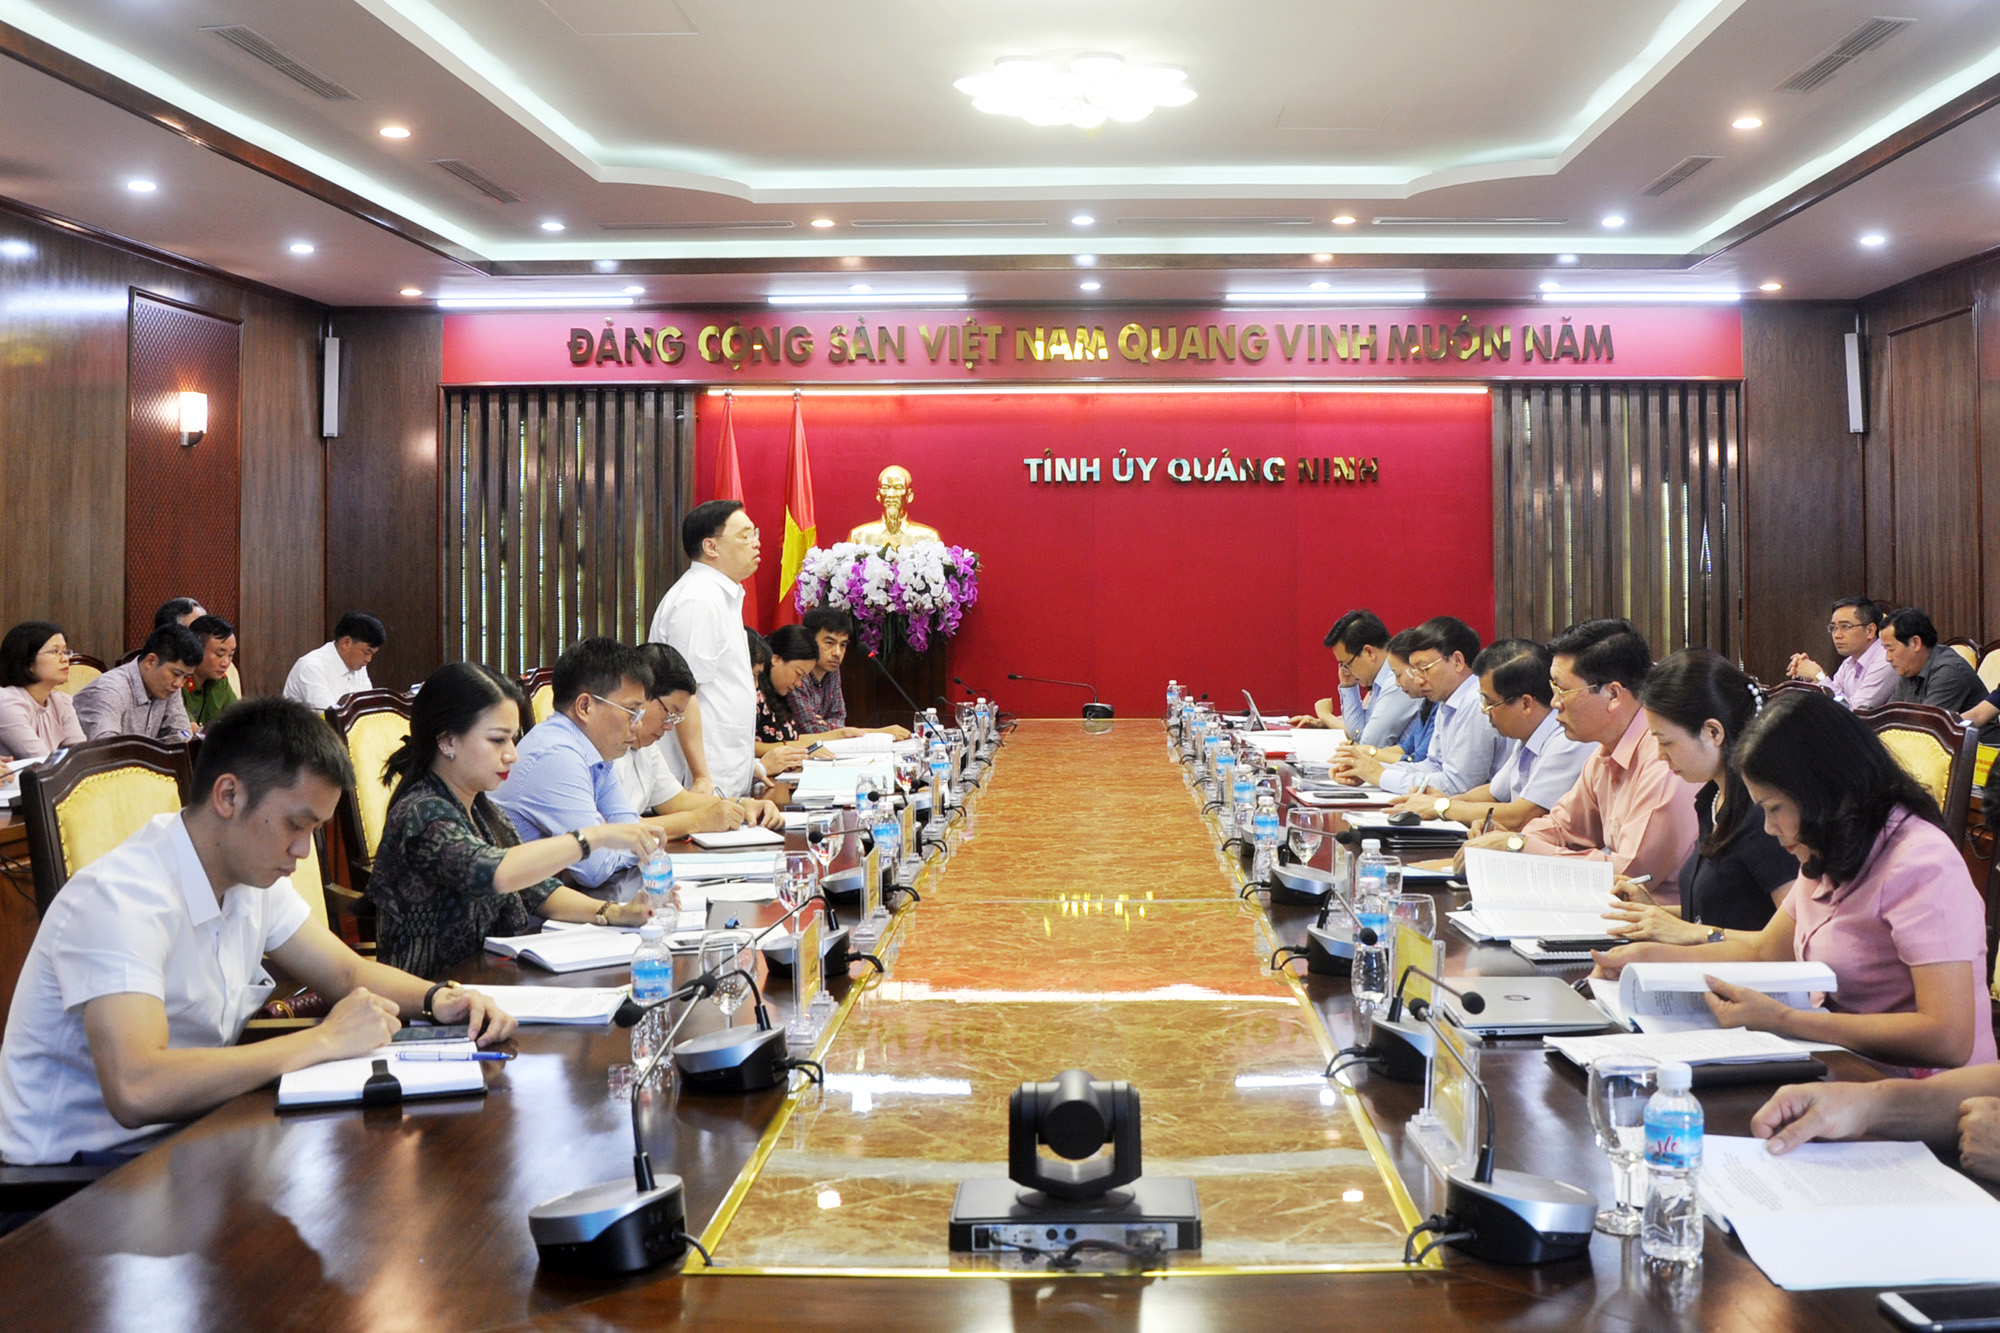 Đoàn khảo sát của Ban Tuyên giáo Trung ương làm việc với Thường trực Tỉnh ủy Quảng Ninh về thực hiện Quyết định số 221-QĐ/TW. Ảnh: Thu Chung